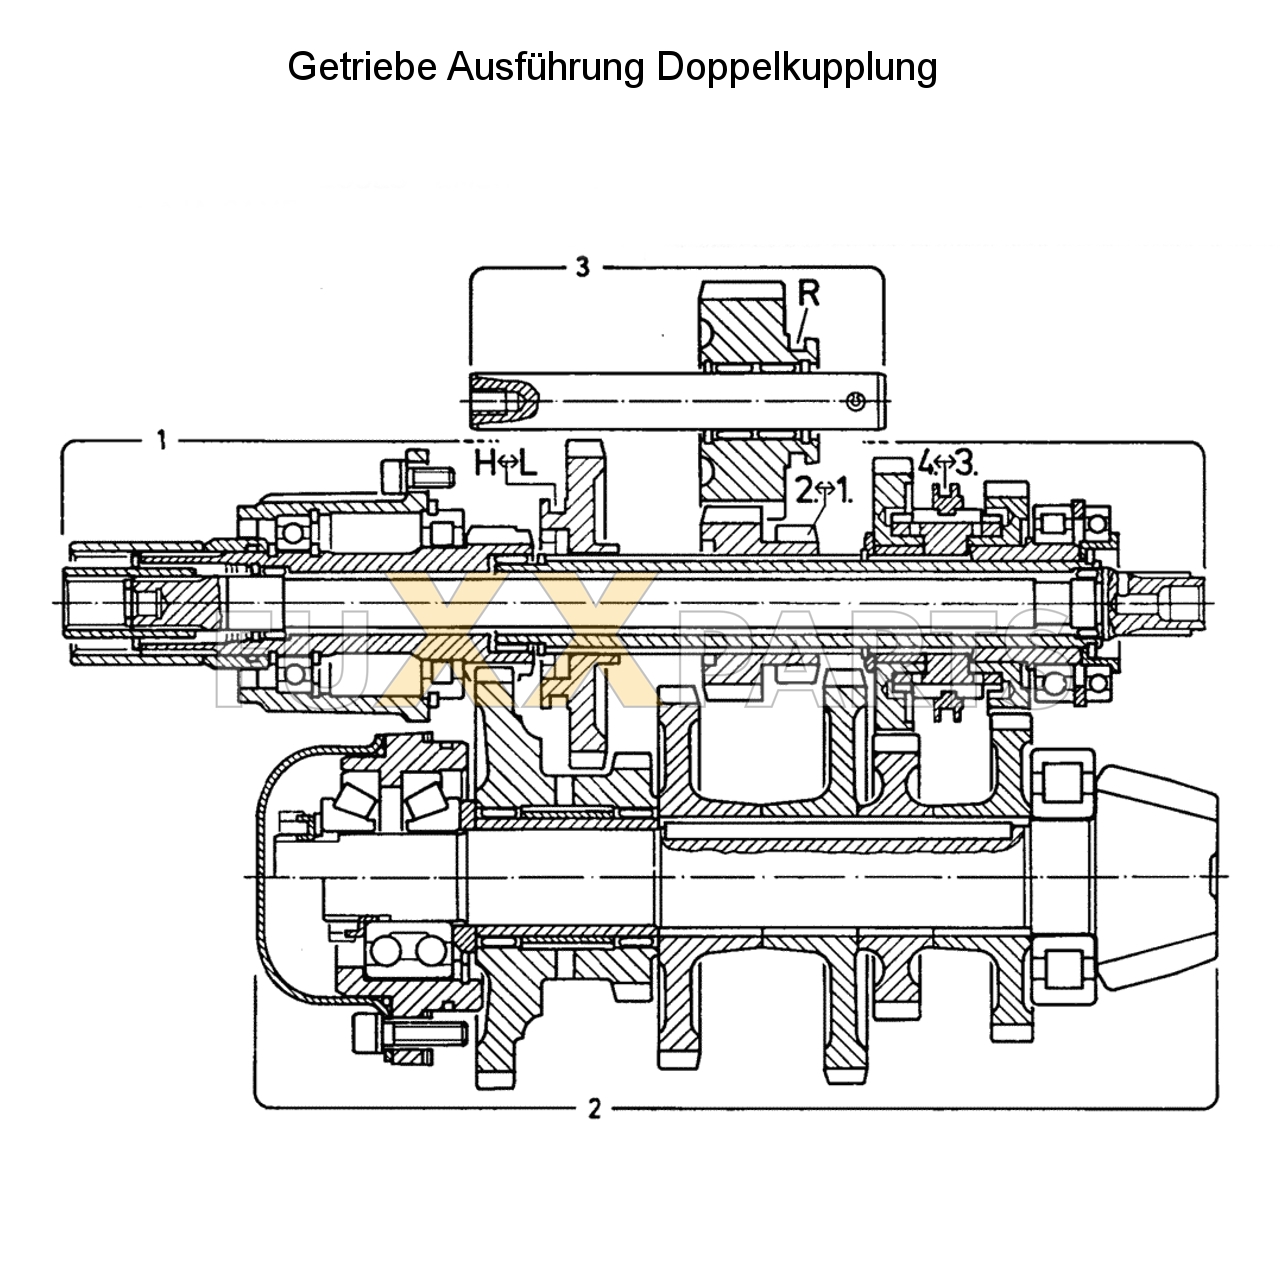 D 2807 Getriebeschnittbild Doppelkupplung